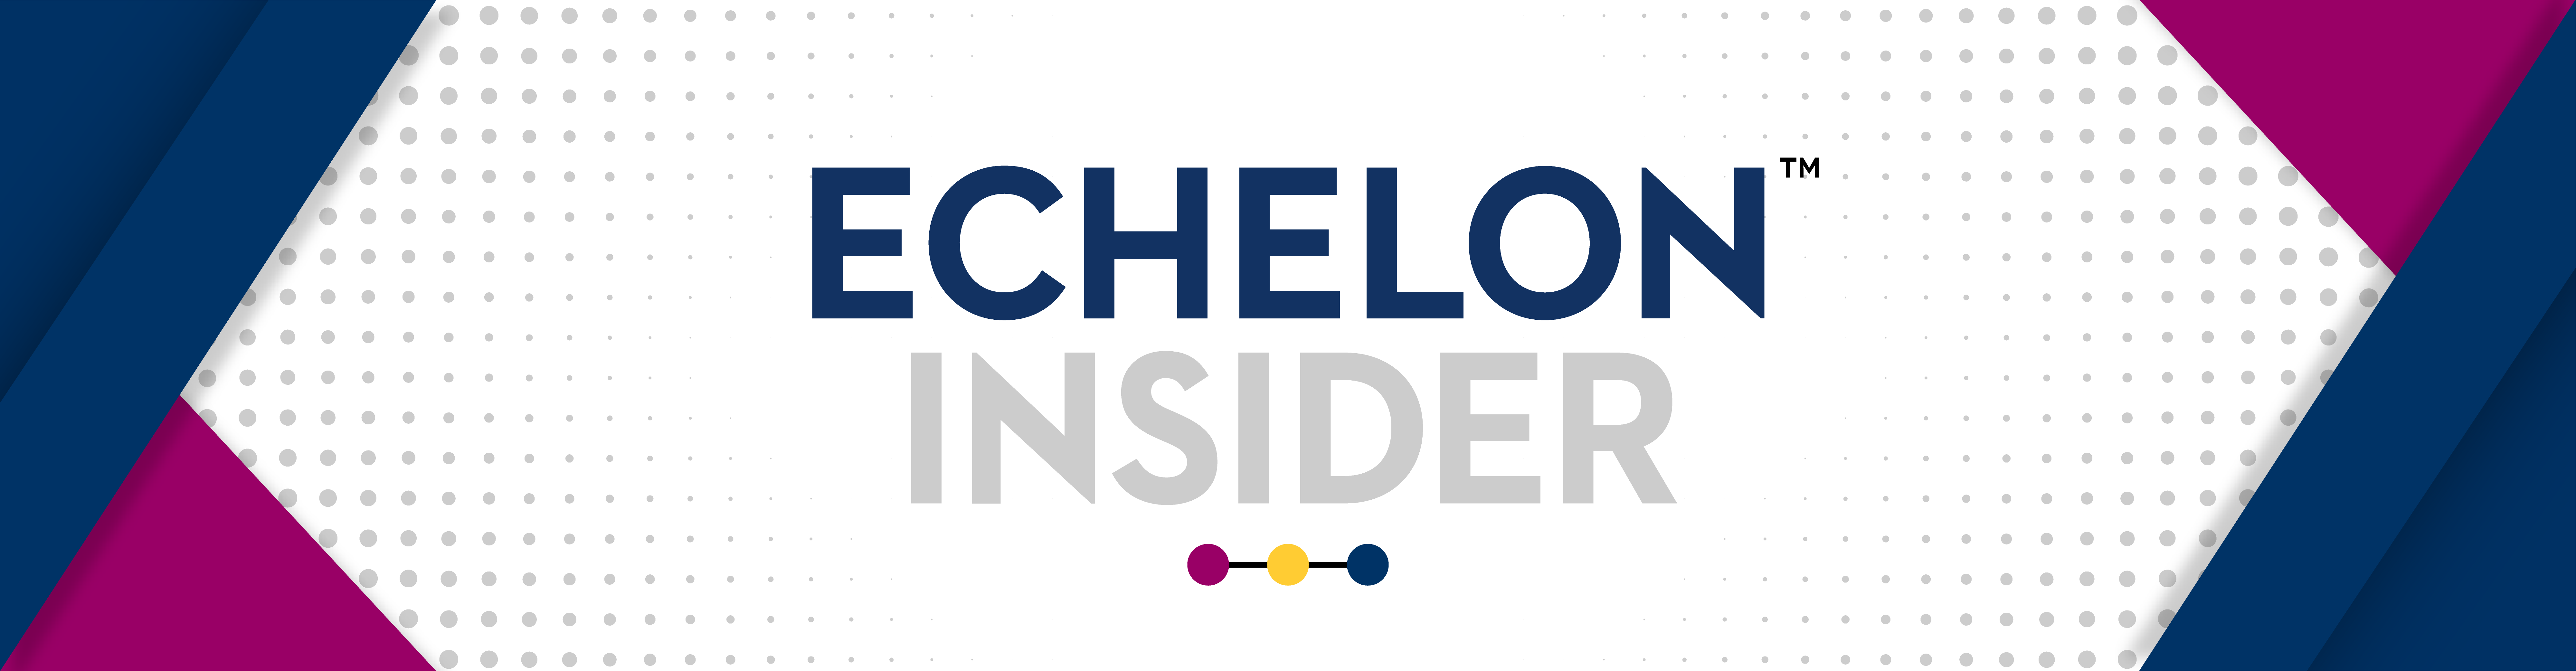 Echelon Insider Newsletter